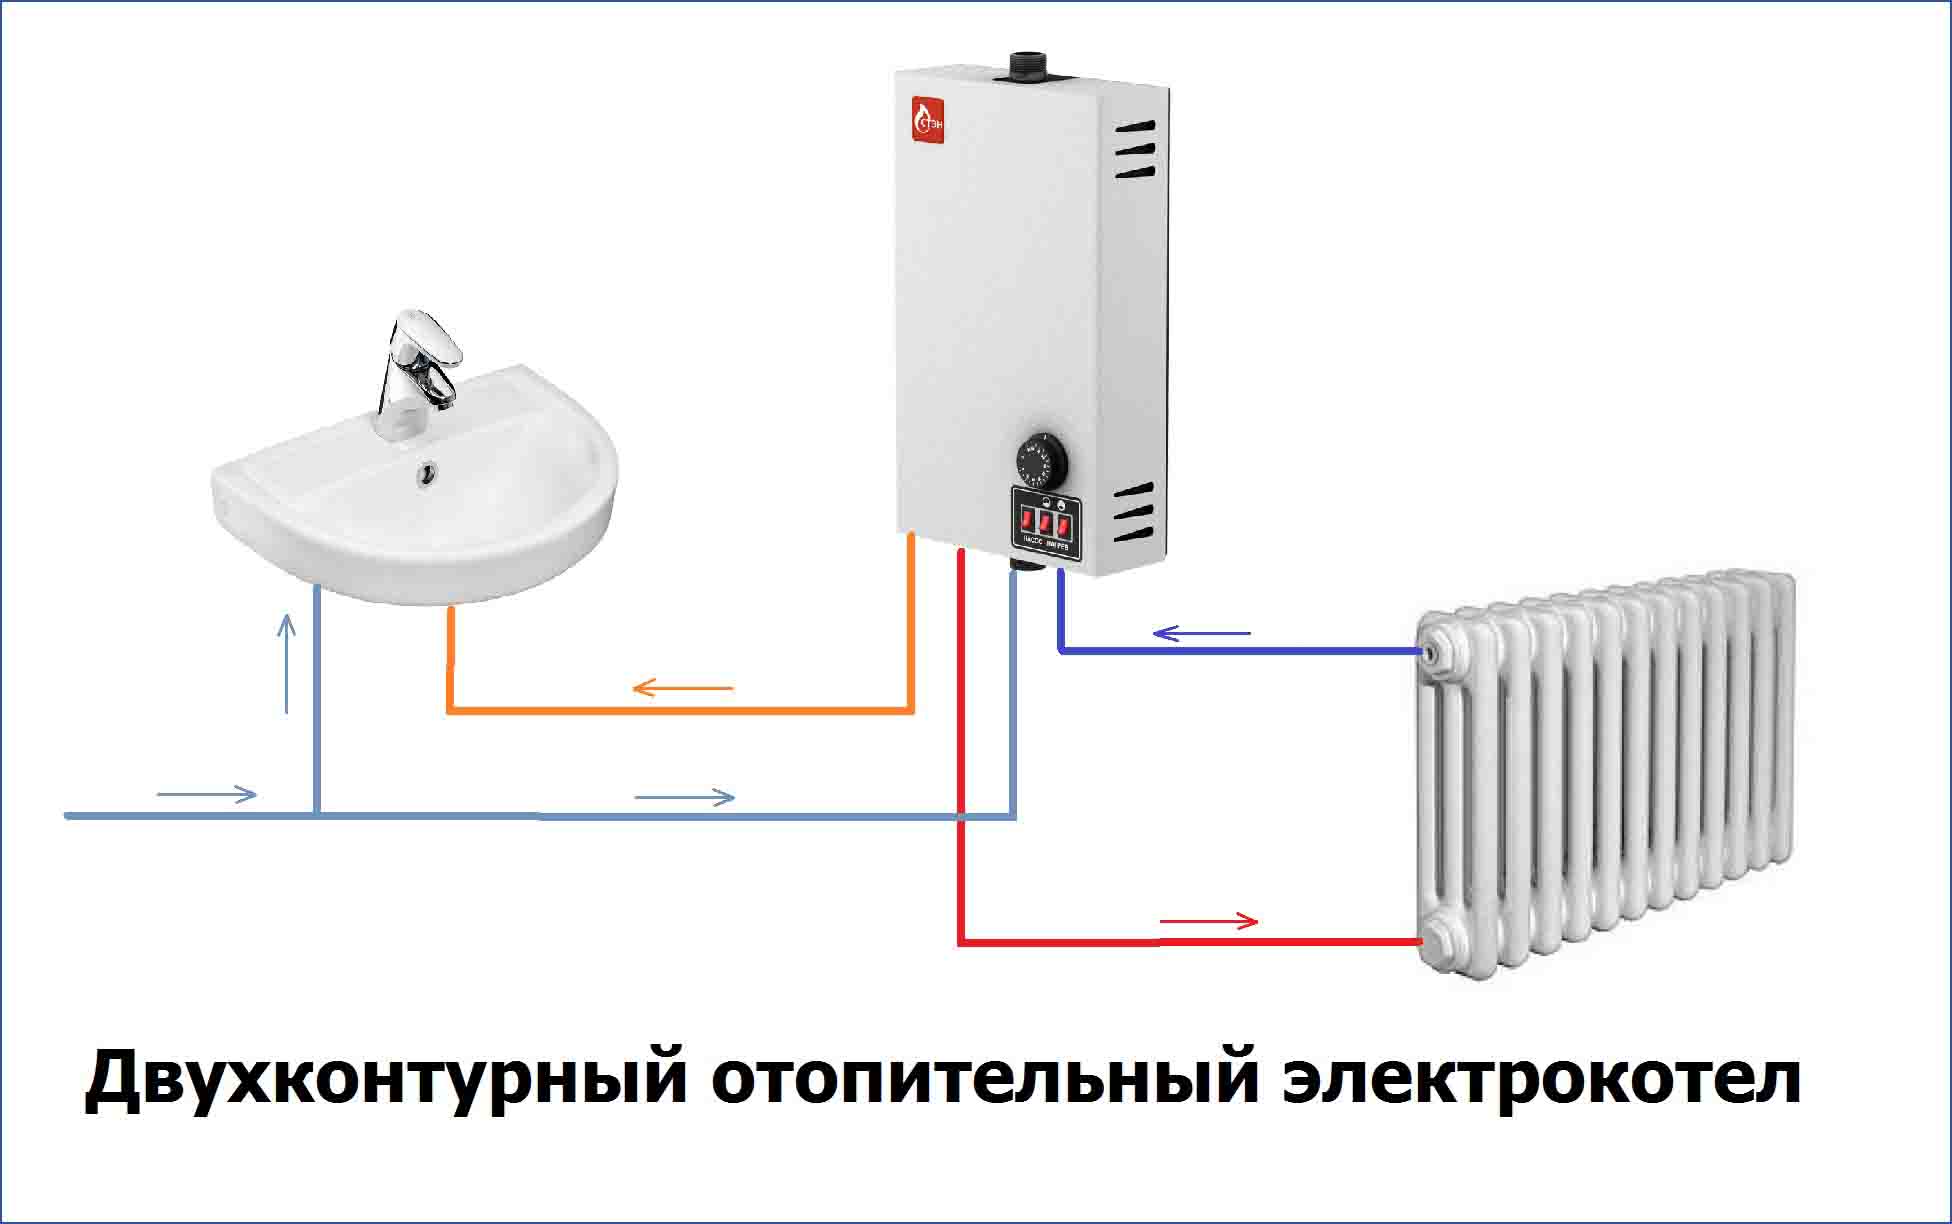 Двухконтурный электрокотел отопления